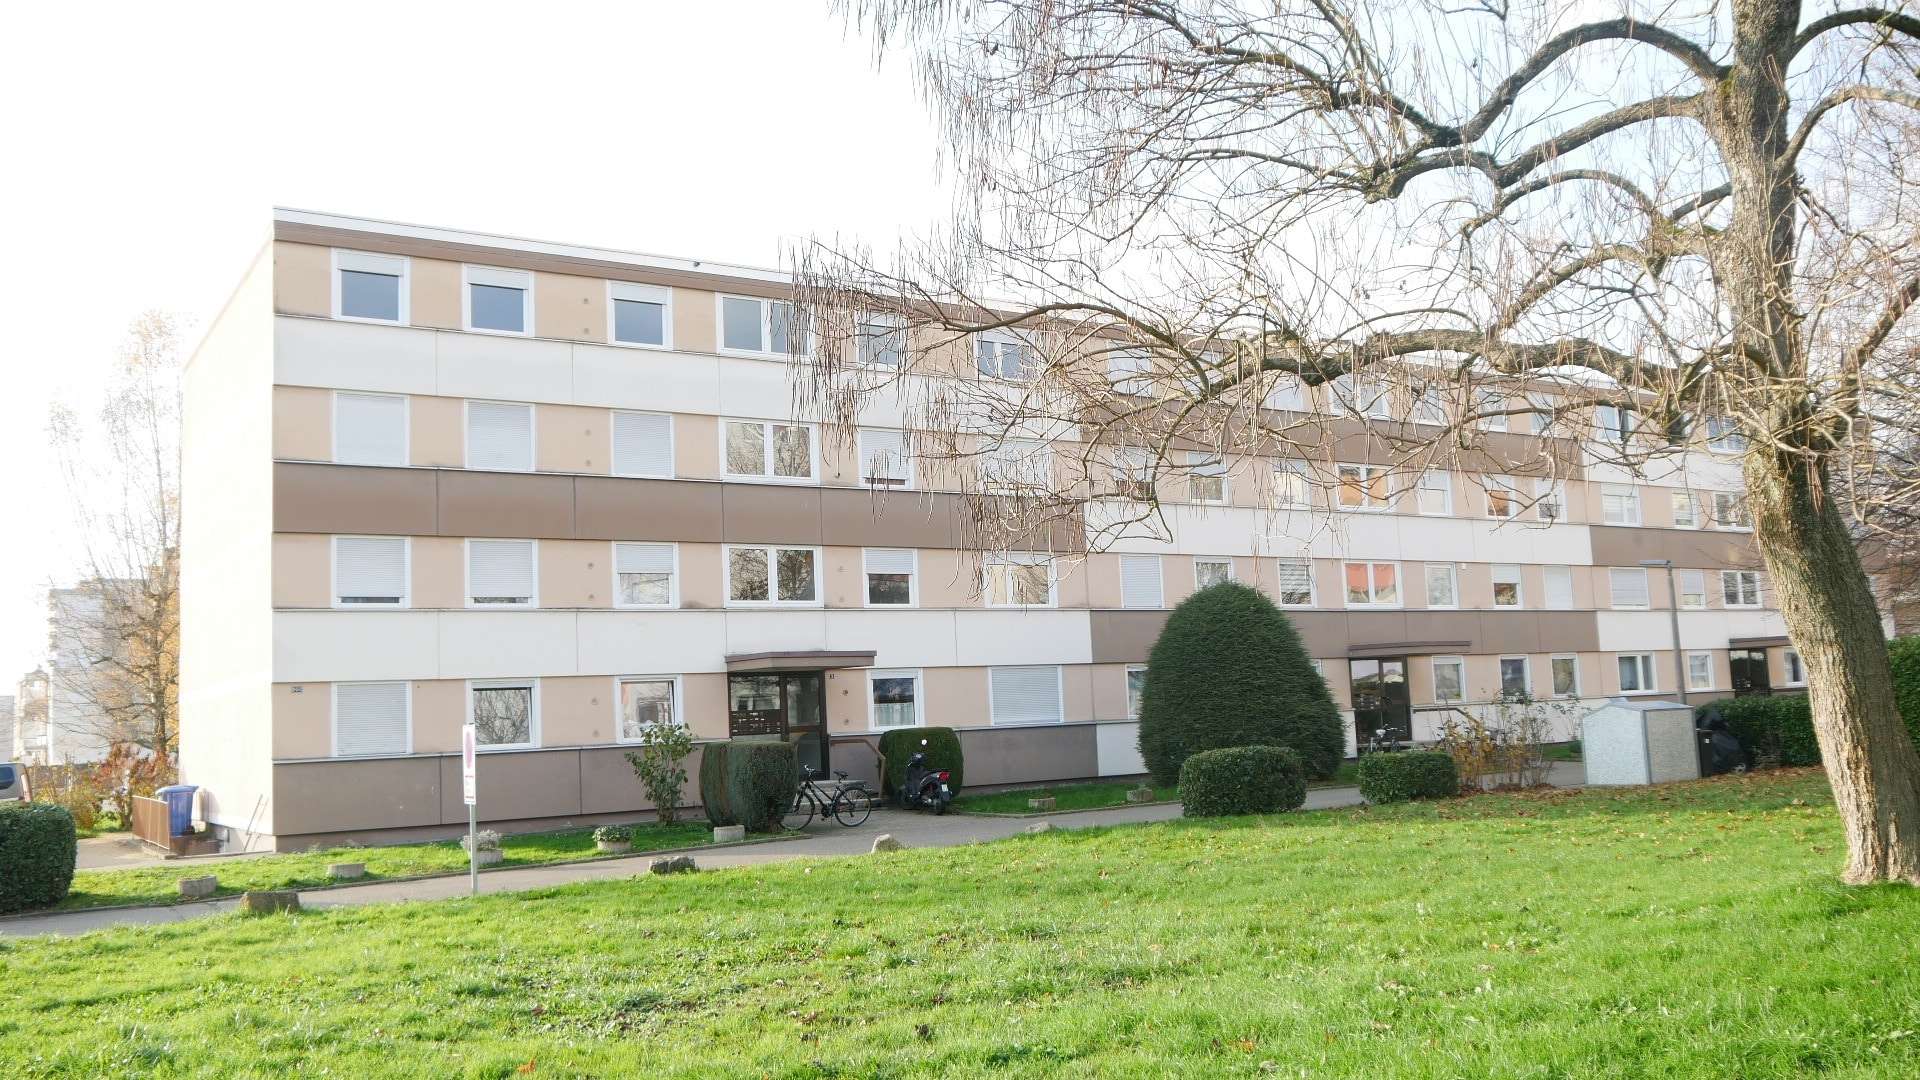 Ansicht - Etagenwohnung in 79618 Rheinfelden mit 70m² als Kapitalanlage kaufen